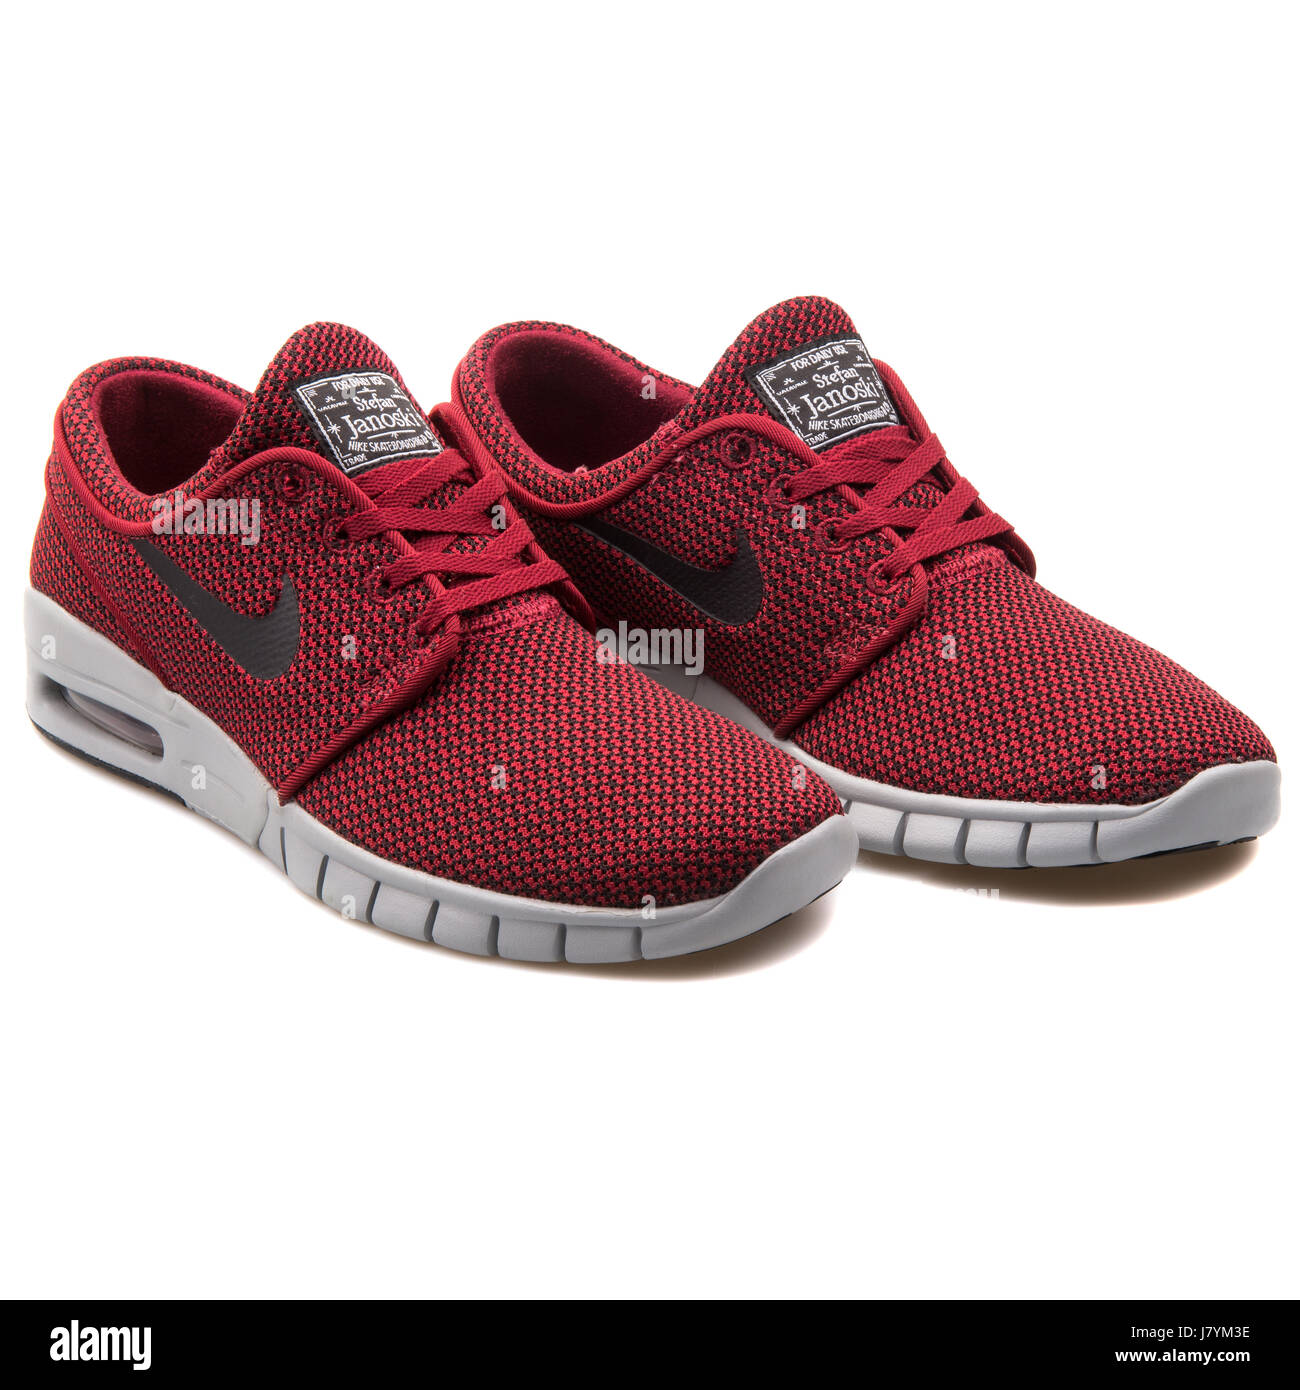 Nike Stefan Janoski Max Men's Red Black Skateboarding Sneakers - 631303-601  Stock Photo - Alamy